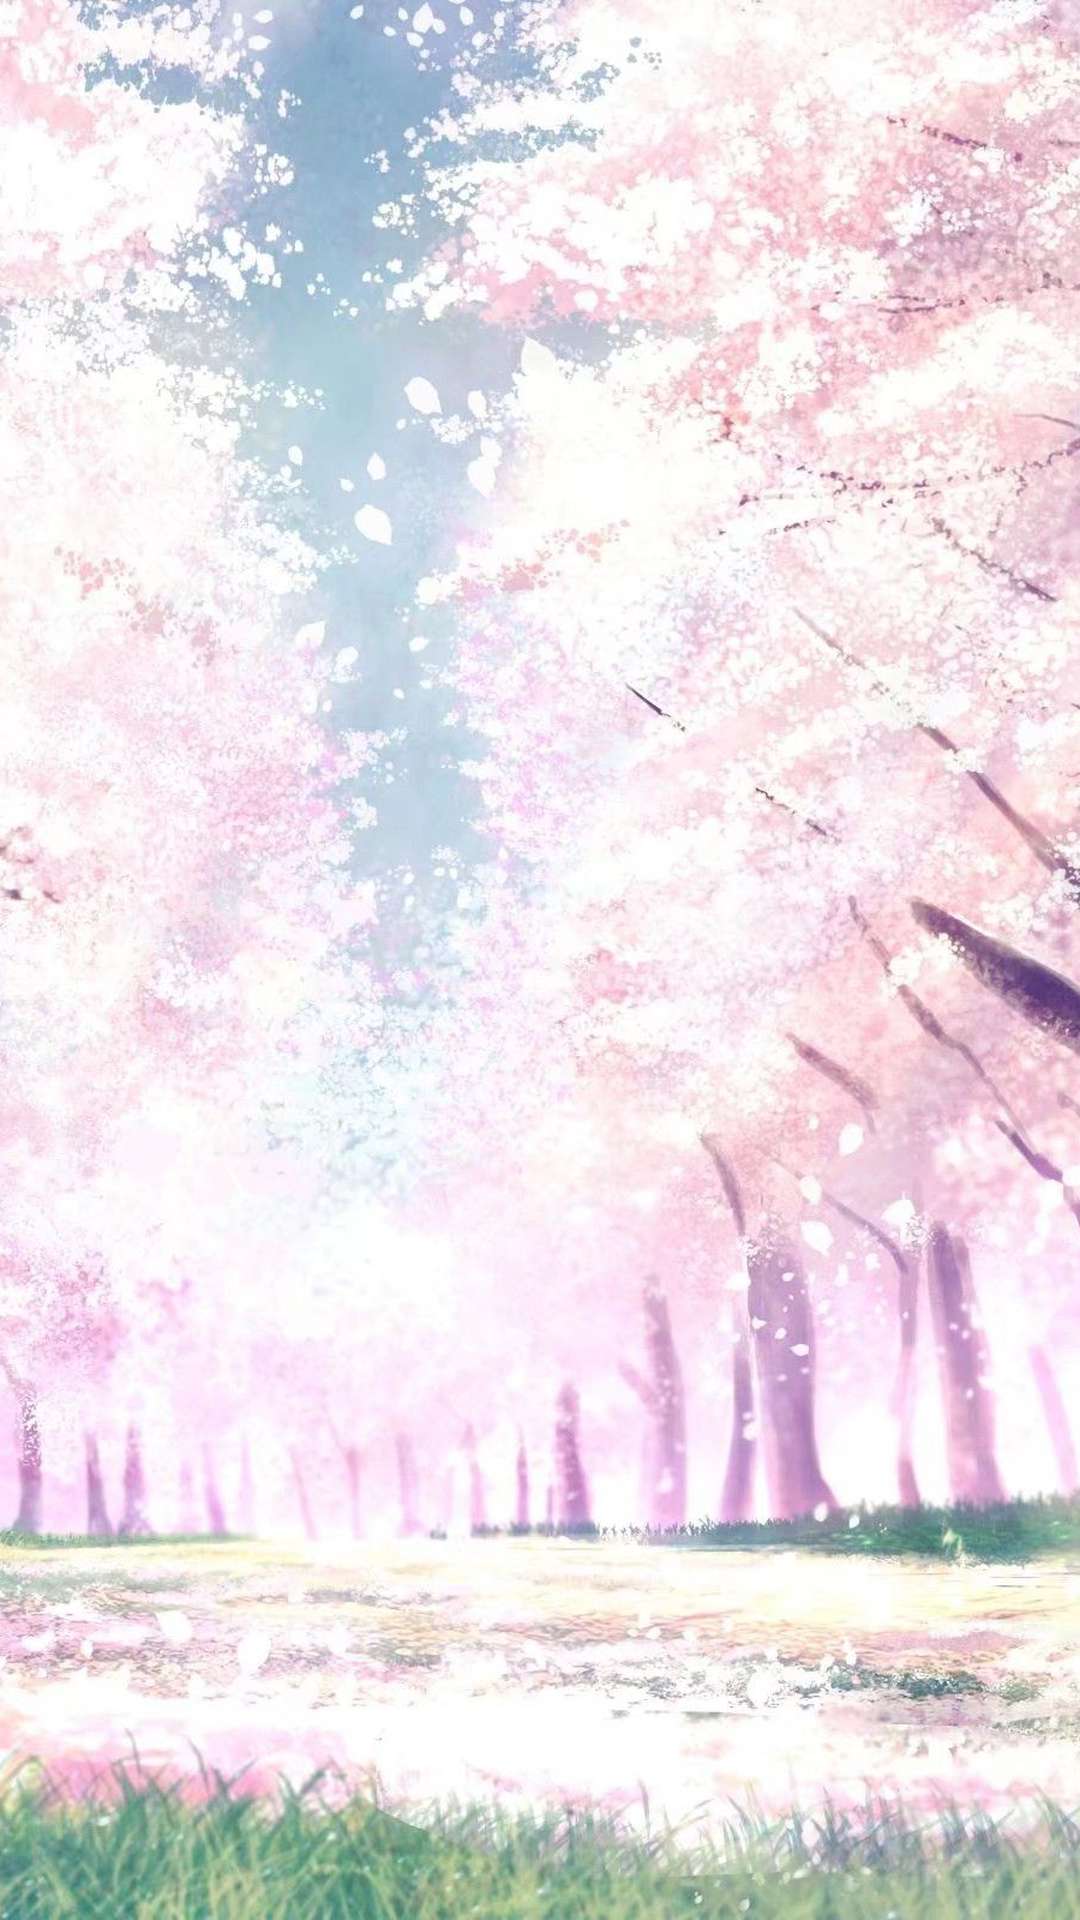 Download wallpaper 1920x1080 girl, ears, neko, kimono, flowers, spring,  anime full hd, hdtv, fhd, 1080p hd background